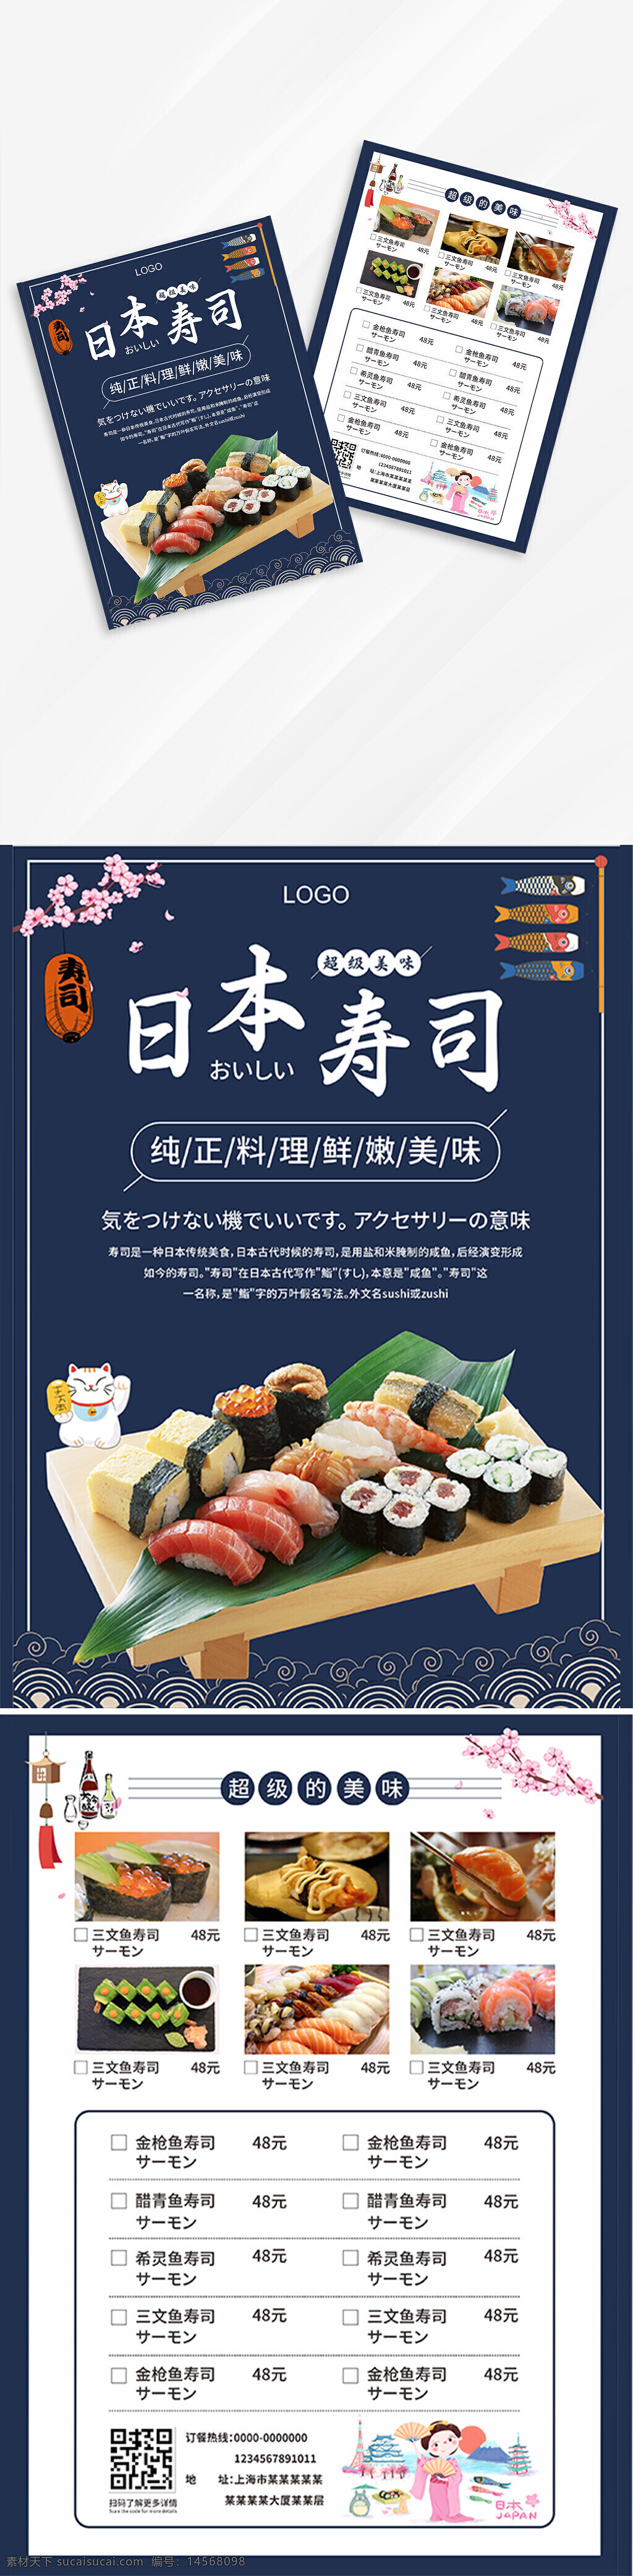 寿司单页 餐饮单页 寿司海报 日本寿司 寿司菜单 餐饮菜单